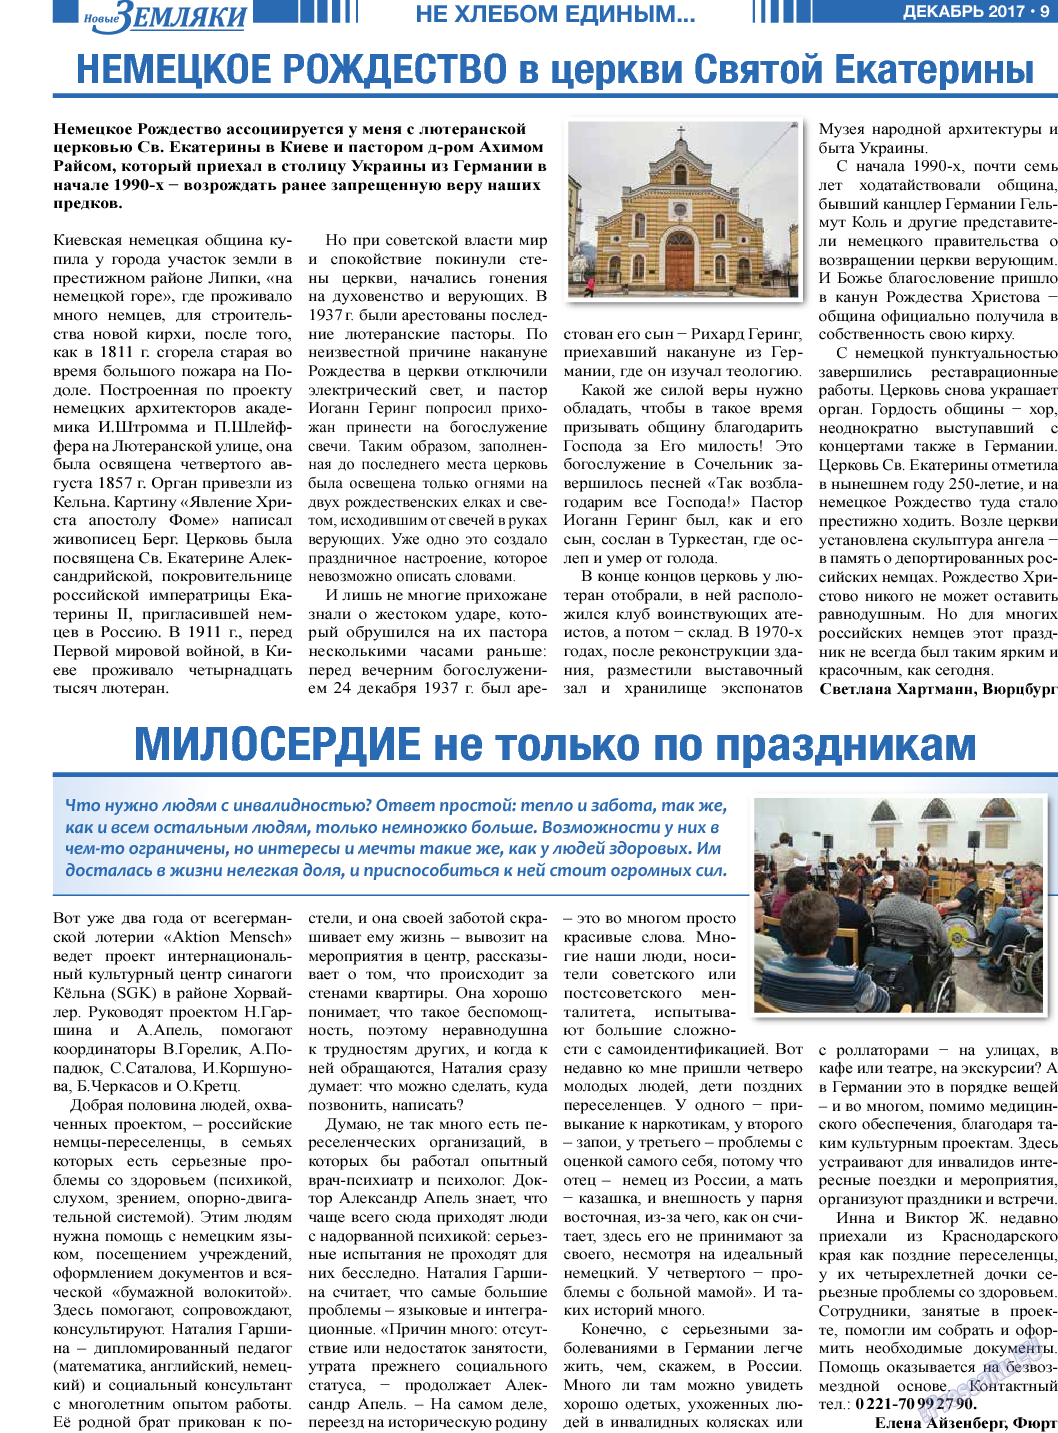 Новые Земляки, газета. 2017 №12 стр.9